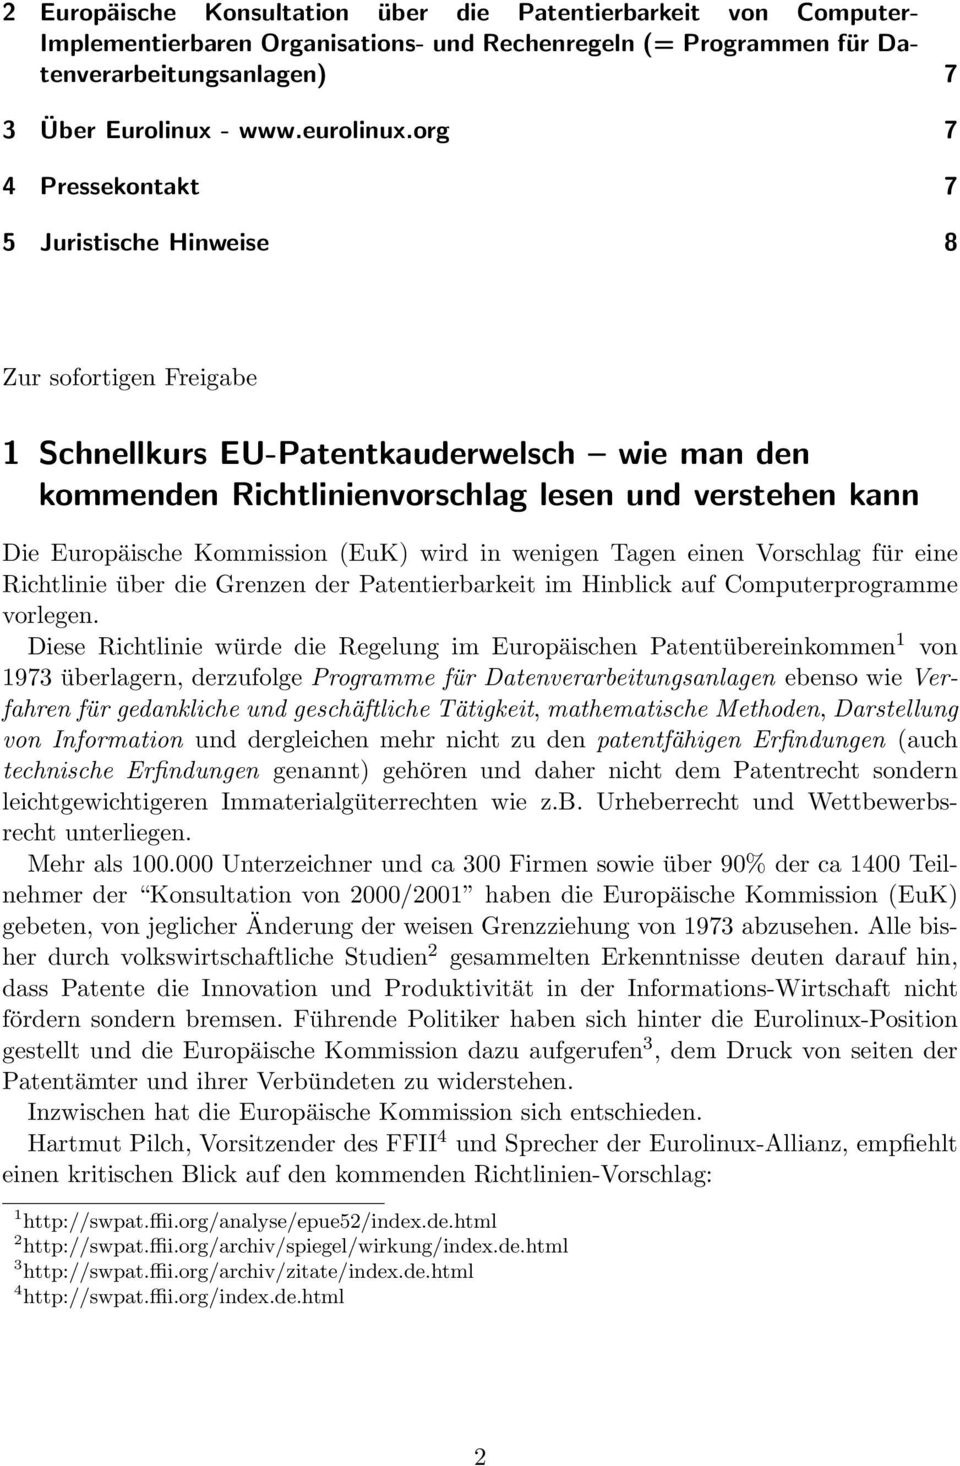 Kommission (EuK) wird in wenigen Tagen einen Vorschlag für eine Richtlinie über die Grenzen der Patentierbarkeit im Hinblick auf Computerprogramme vorlegen.